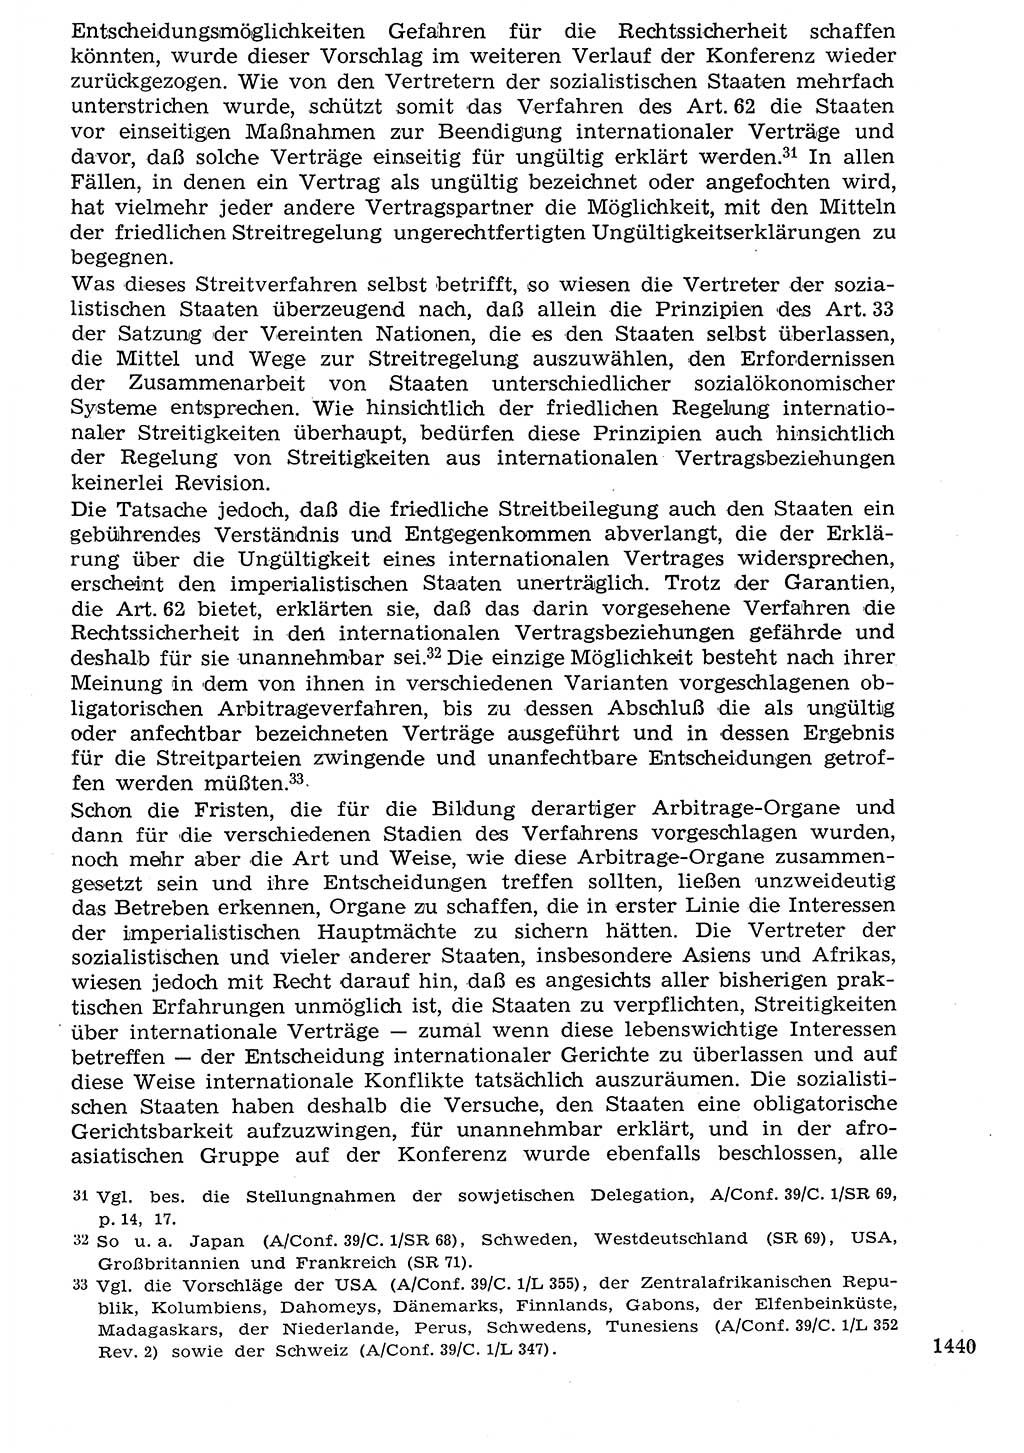 Staat und Recht (StuR), 17. Jahrgang [Deutsche Demokratische Republik (DDR)] 1968, Seite 1440 (StuR DDR 1968, S. 1440)